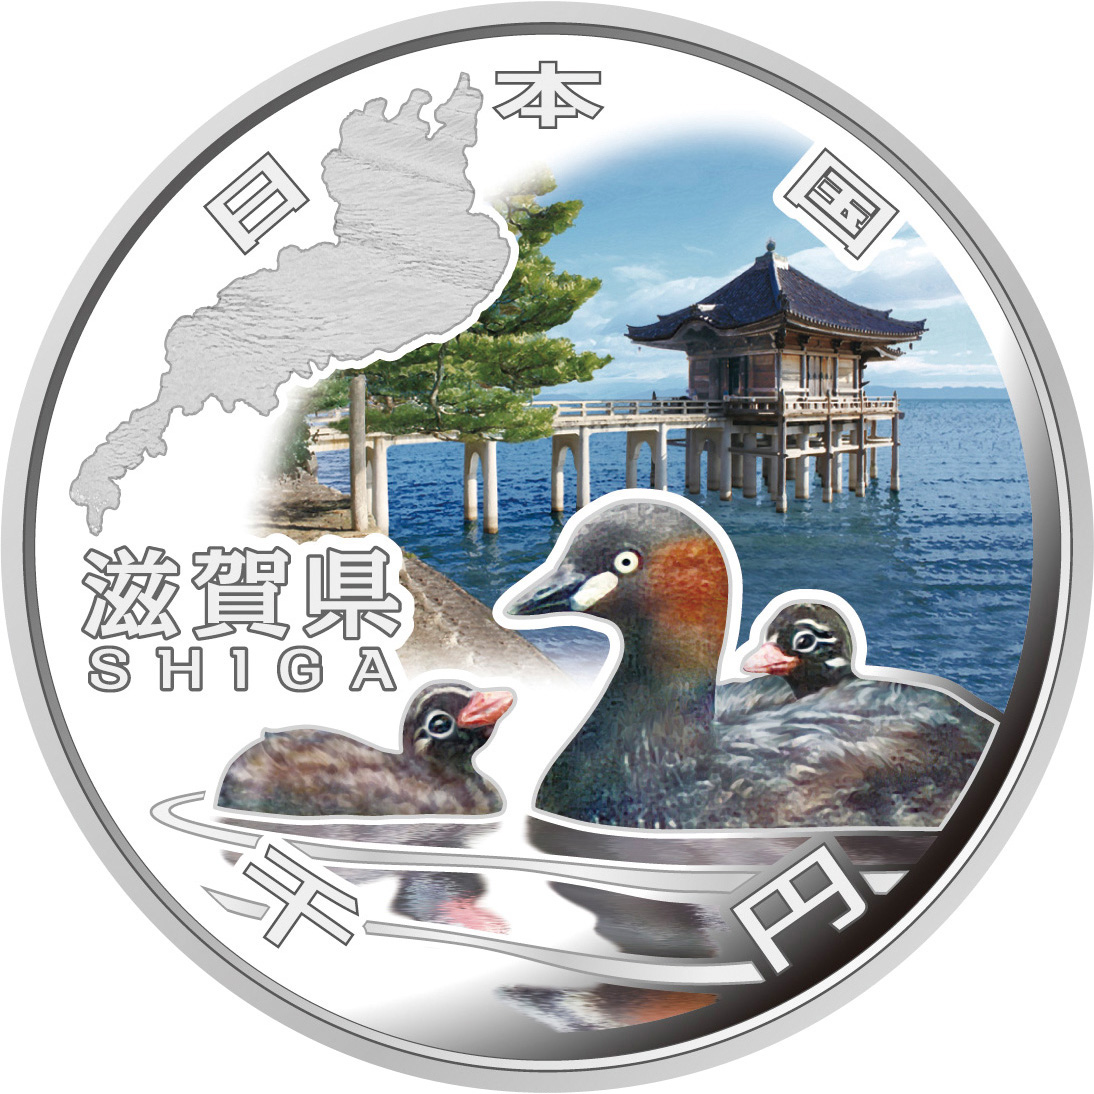 日本 2011年 地方自治法施行60周年記念貨幣 第17回 「滋賀県」 単体 